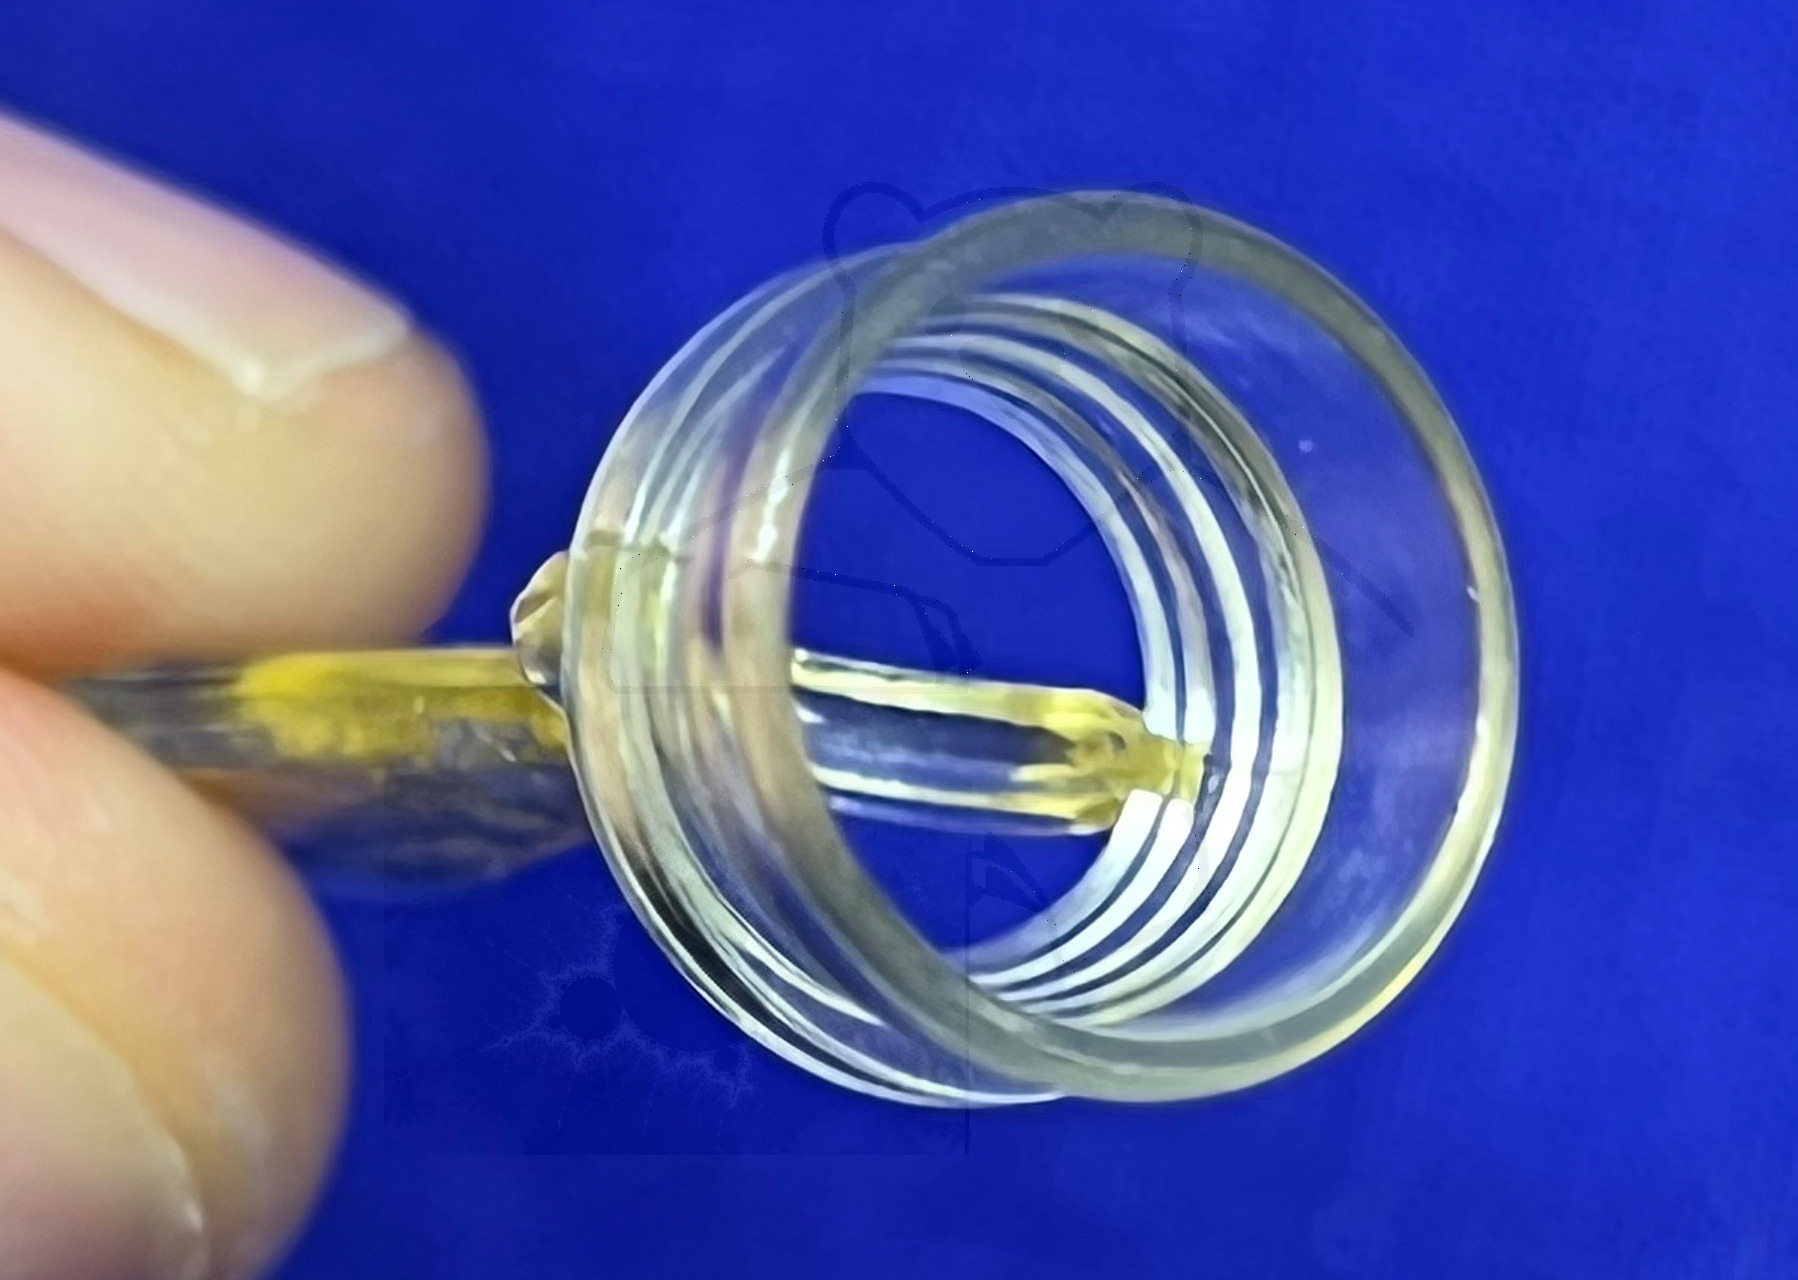 Plastibell, Blick in den Ring mit der Sollbruchstelle